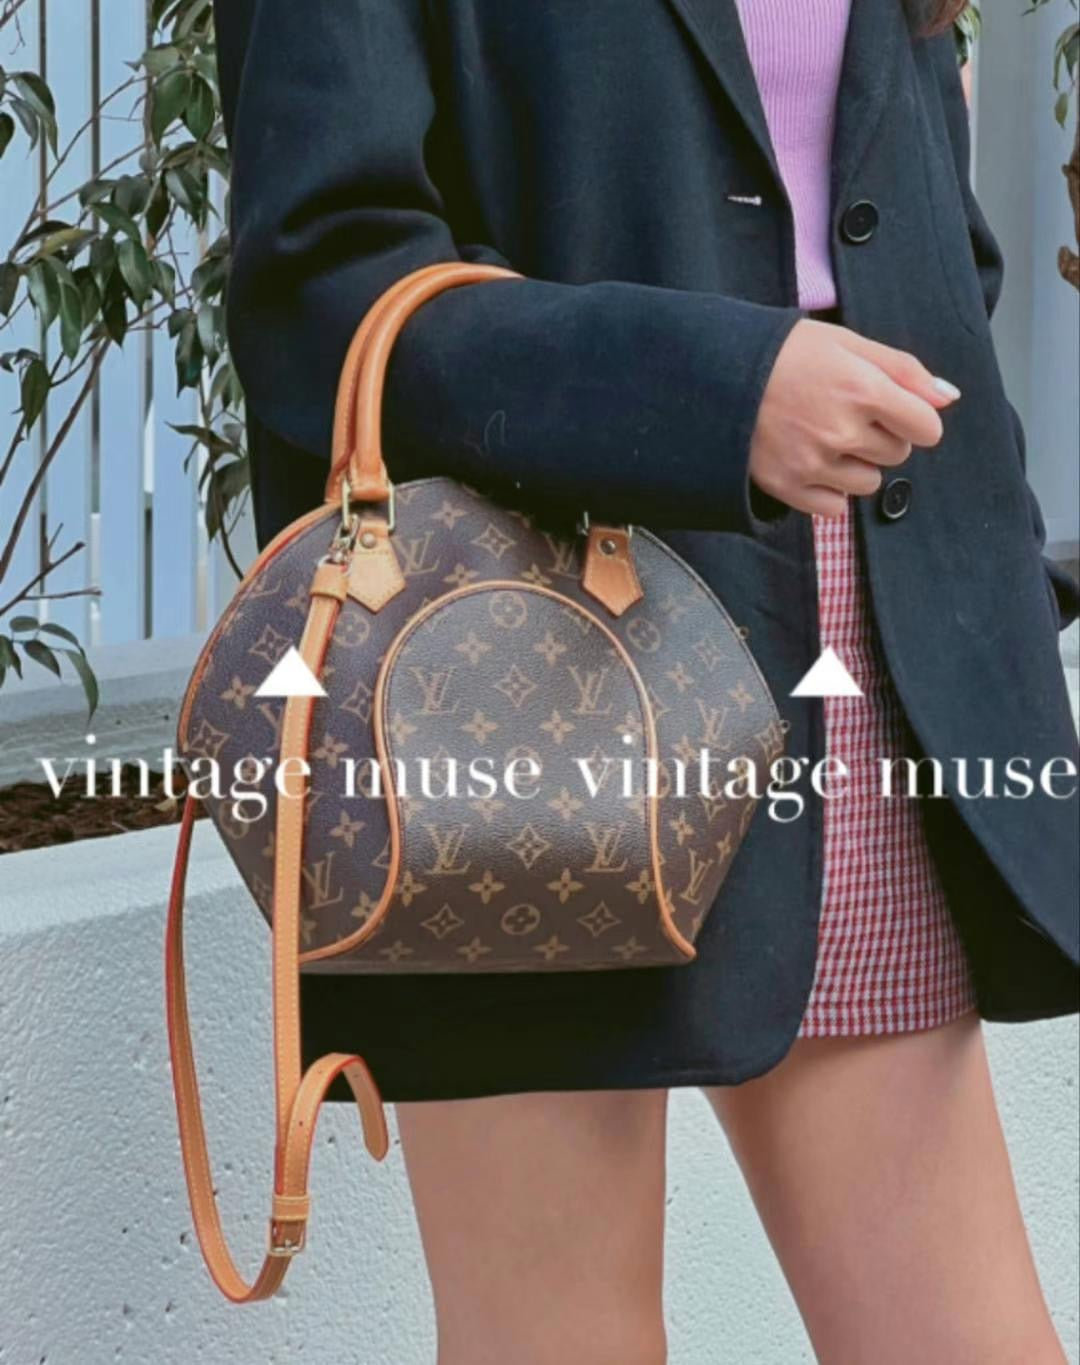 Louis Vuitton Handbags for sale in Arlington Texas  Facebook Marketplace   Facebook